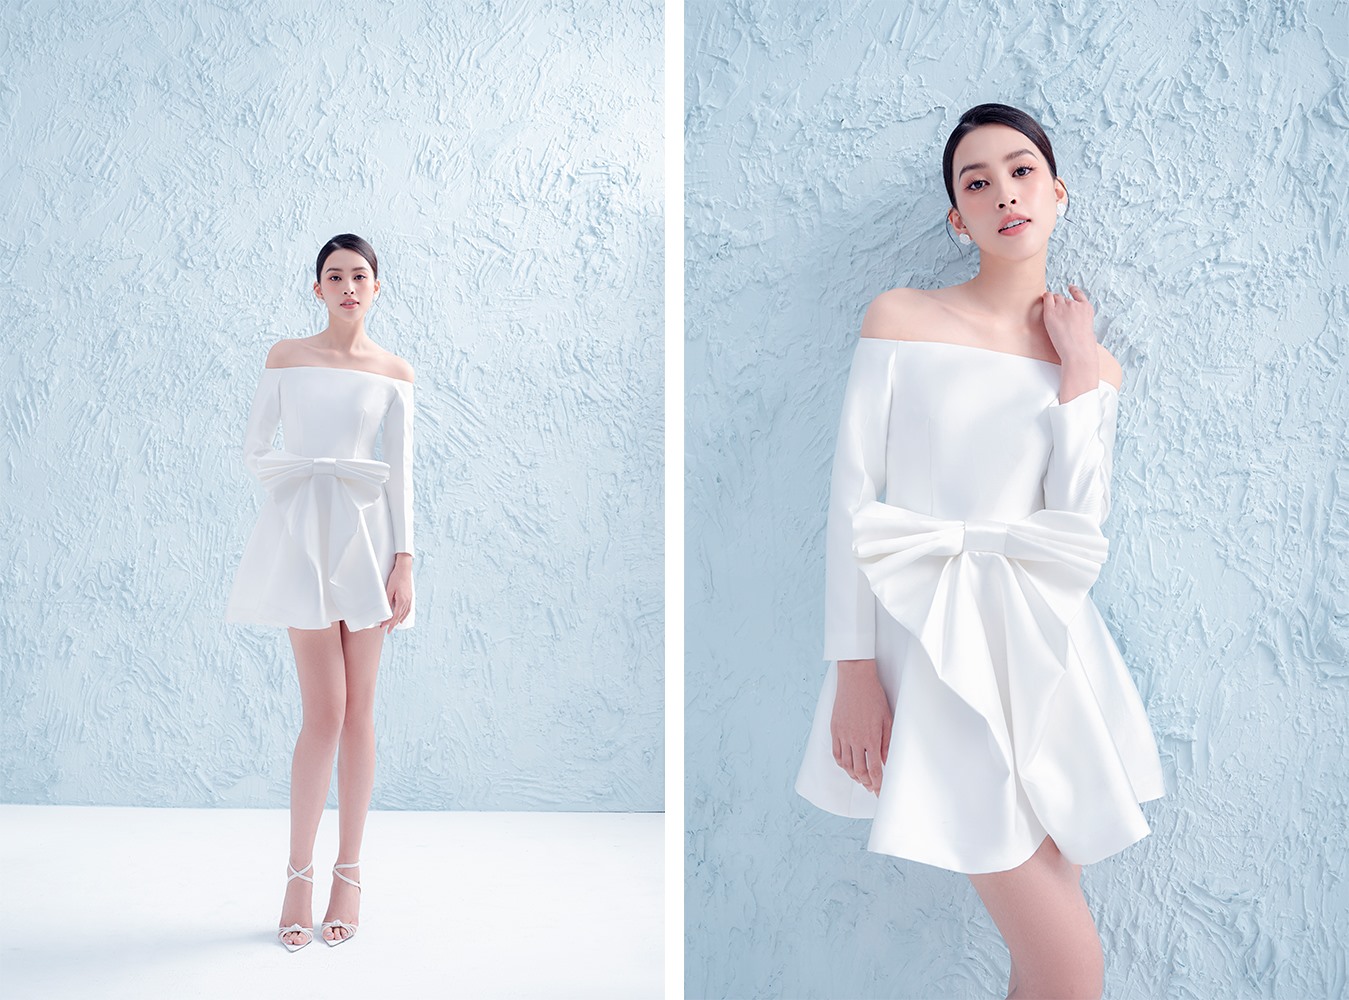 Trong những thiết kế lần này, Hà Thanh Việt truyền tải một BST sắc trắng nền hoa  mang hơi hướm cô dâu hiện đại. Đây cũng là xu hướng thời trang được các nhà mốt nổi tiếng trên thế giới sáng tạo.